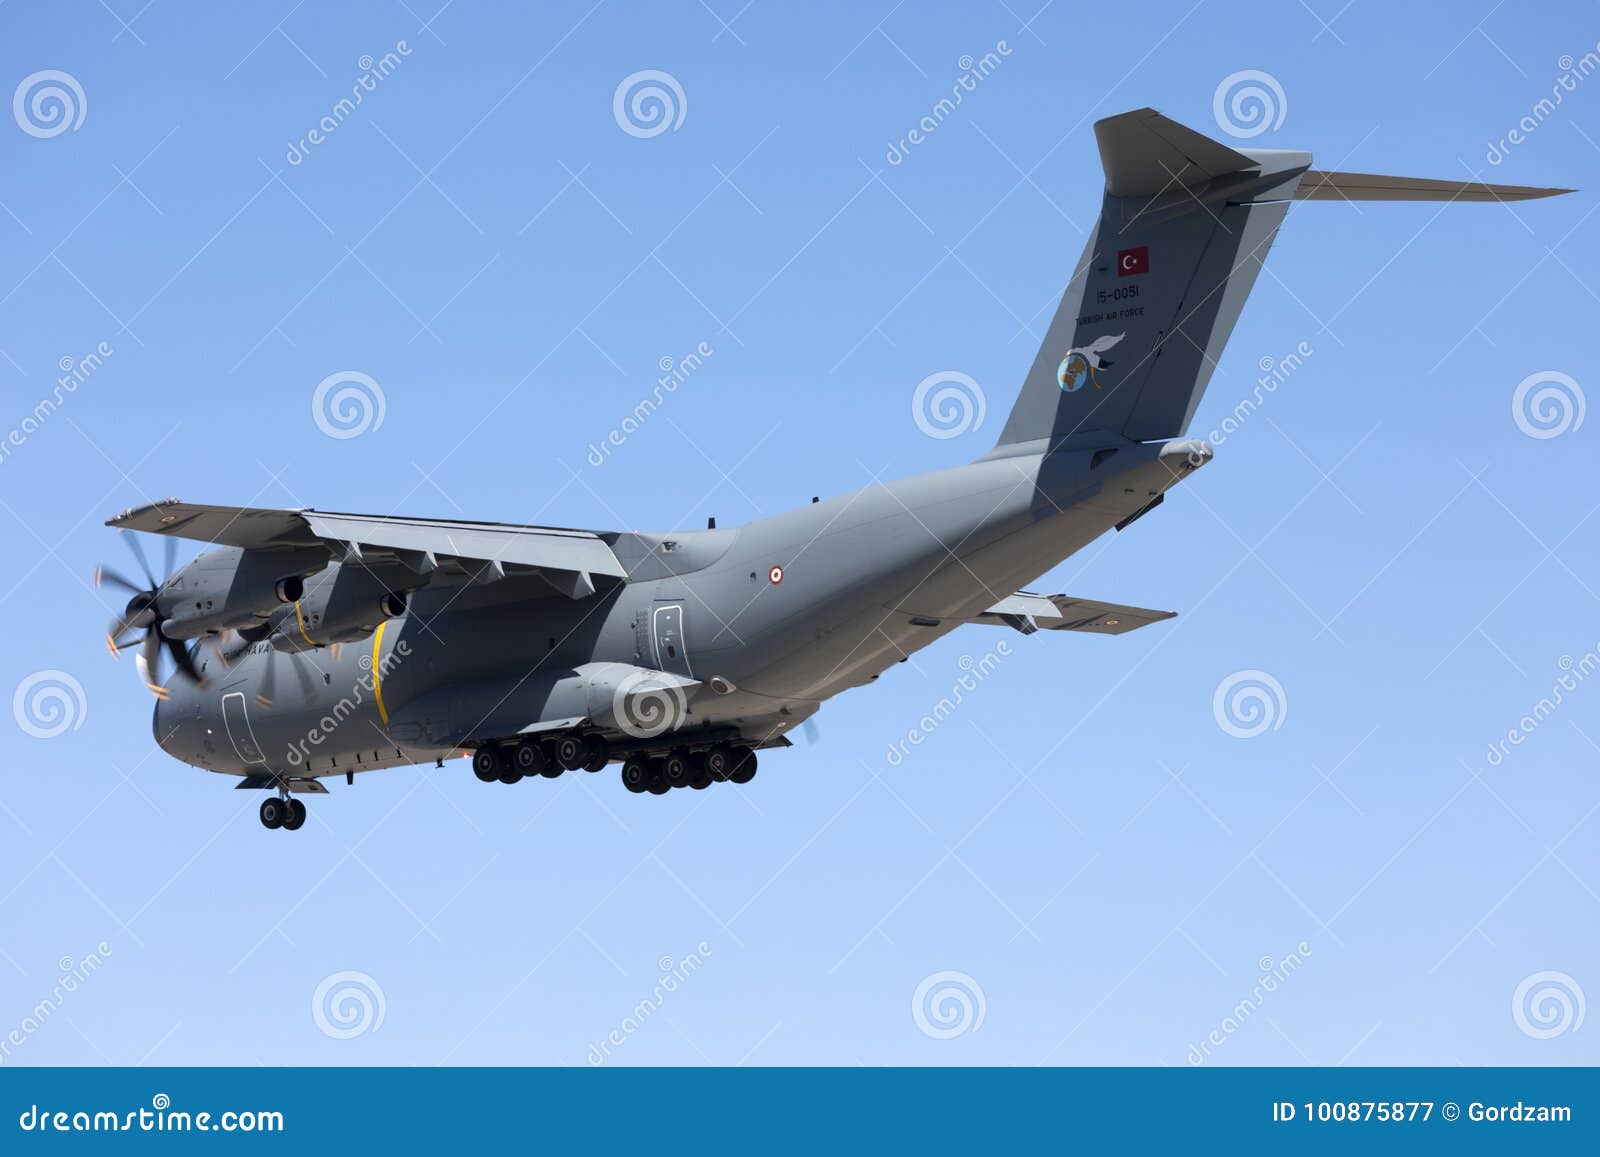 As forças armadas turcas de A400M transportam. Luqa, Malta 21 de setembro de 2017: Pista de decolagem turca 31 da aterrissagem de Airbus A400M Atlas da força aérea [15-0051]; um dos aviões do apoio para as estrelas do turco da equipe